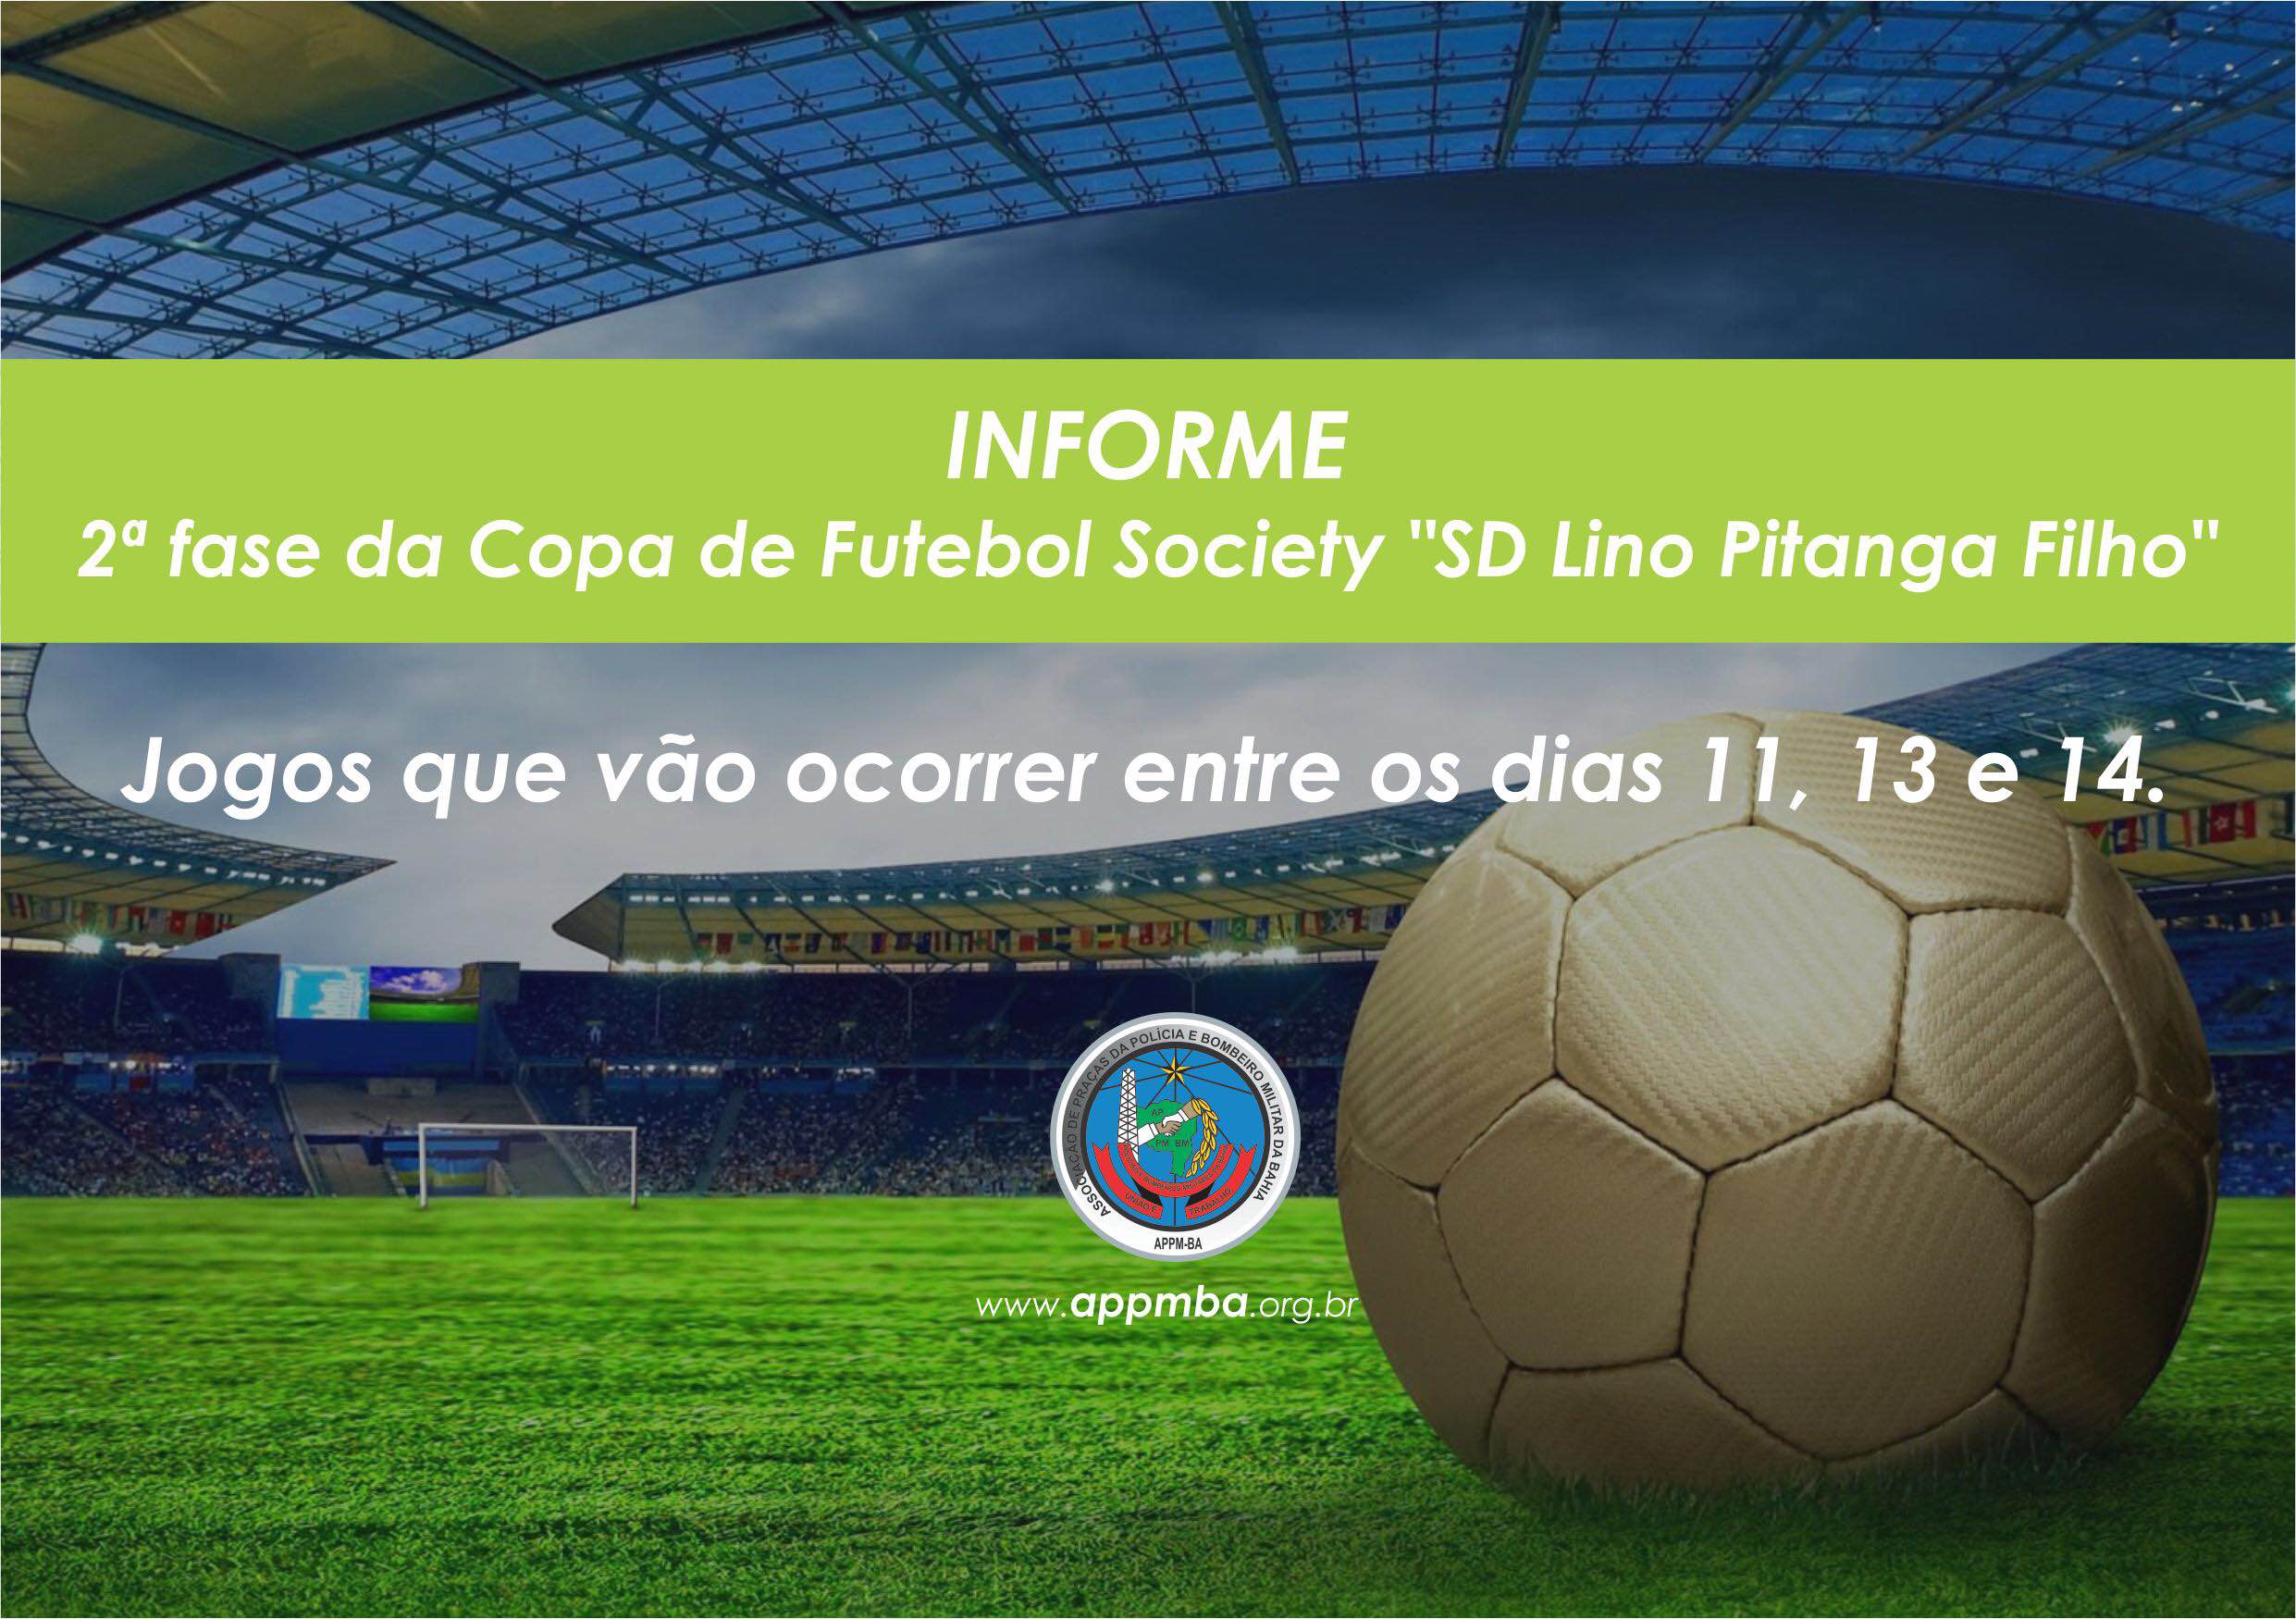 Jogos que vão ocorrer entre os dias 11, 13 e 14 pela 2ª fase da Copa SD Lino Pitanga Filho